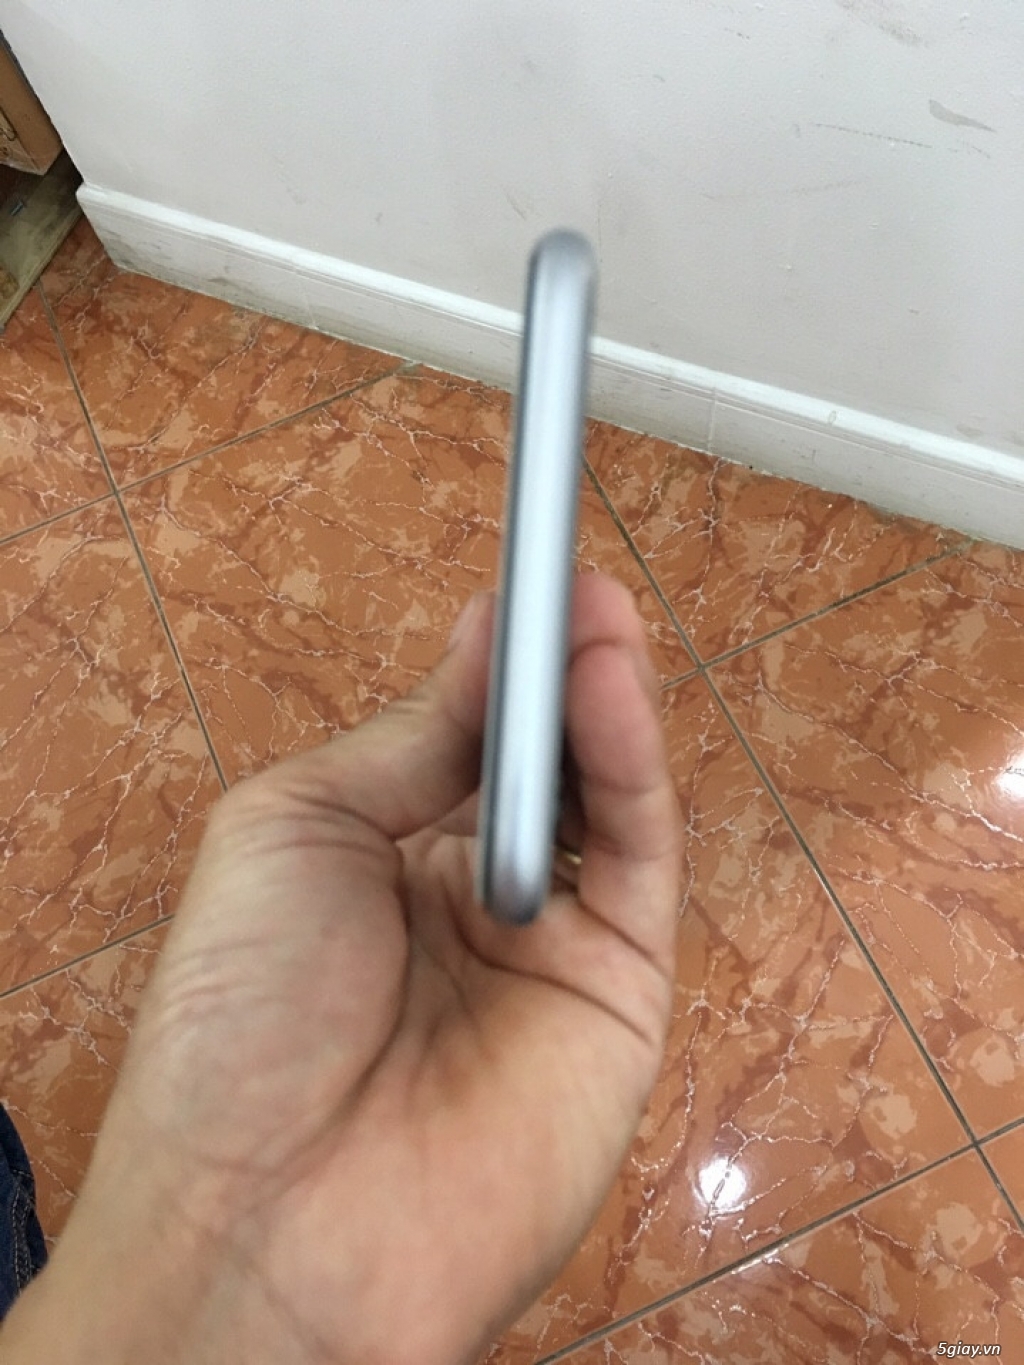 iPhone 6 Plus mày Gray 64GB xách tay từ Mỹ giá Shock - 2